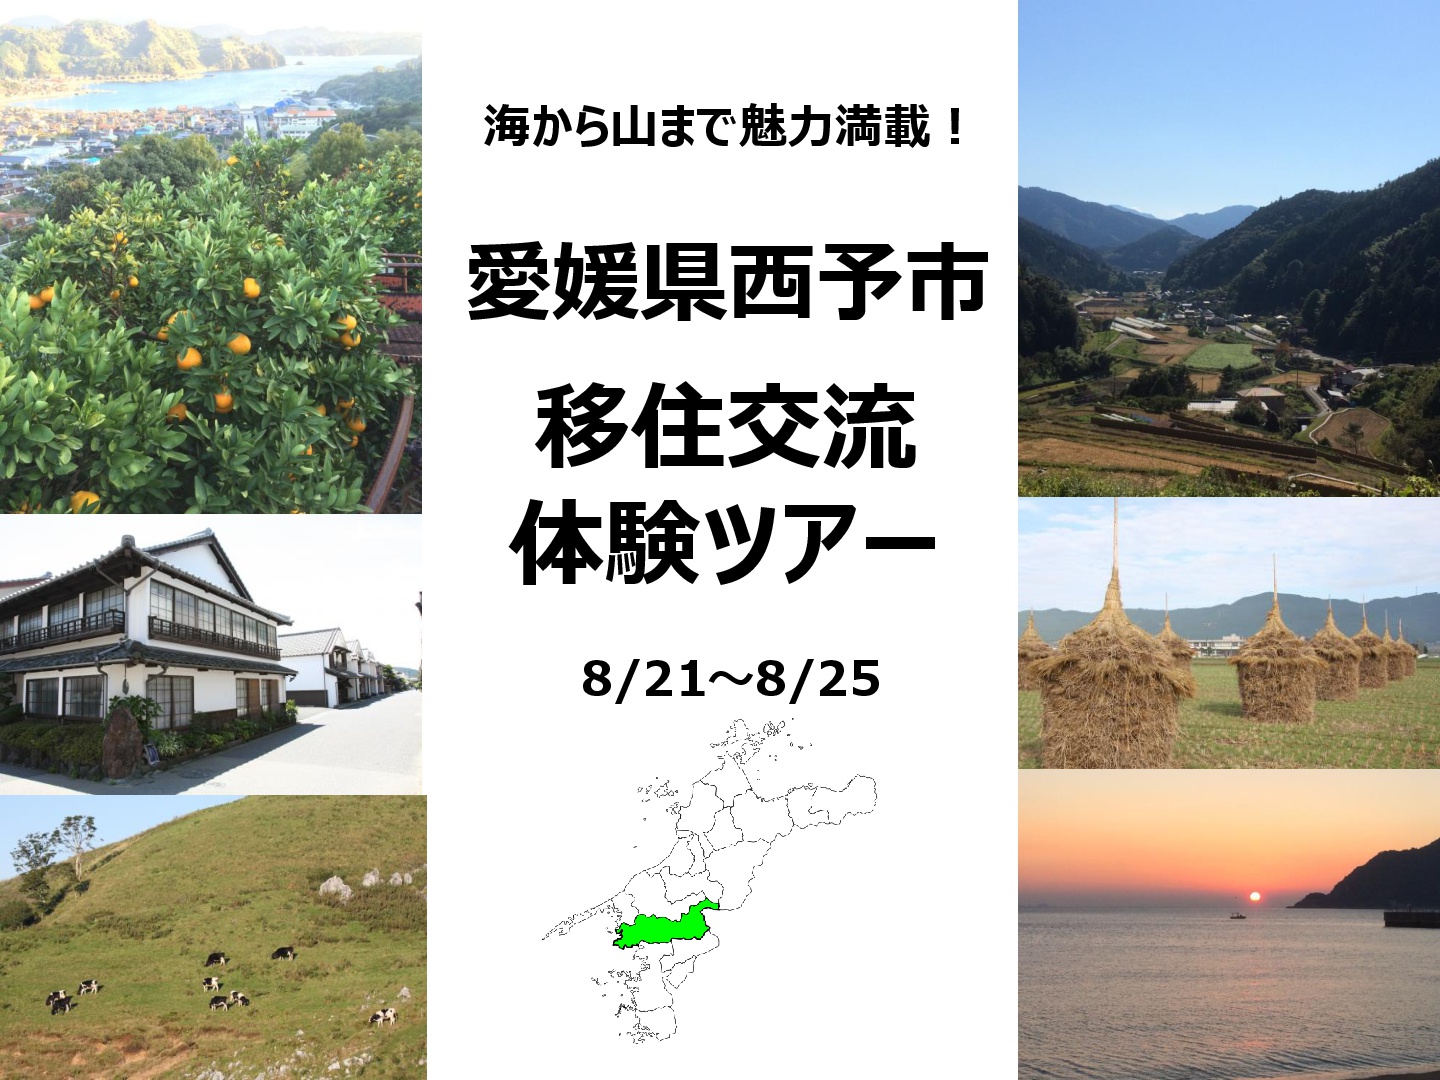 【愛媛県西予市】移住交流体験ツアー開催 | 移住関連イベント情報